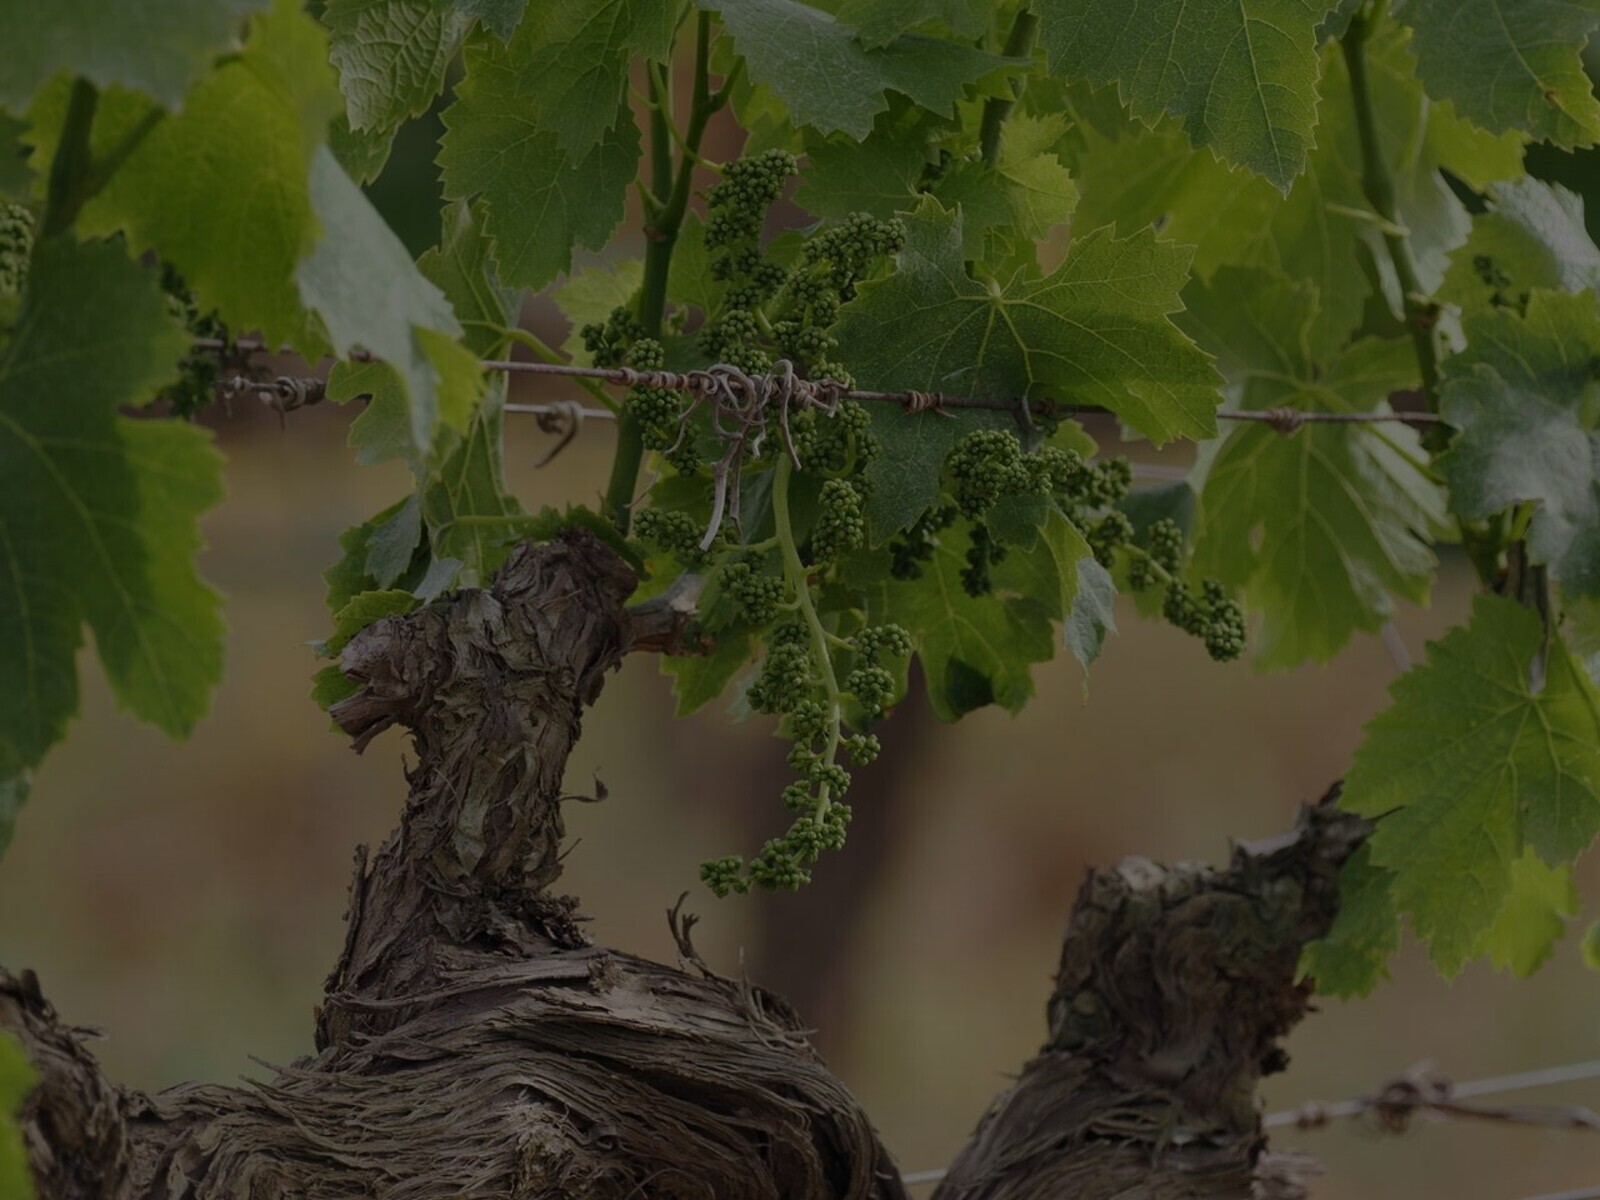 Biodiversitat i respecte per la naturalesaTornar a la viticultura i el treball en vinya que s'havia practicat des de fa segles, basant-nos en el profund coneixement de la naturalesa i en la passió per la fruita